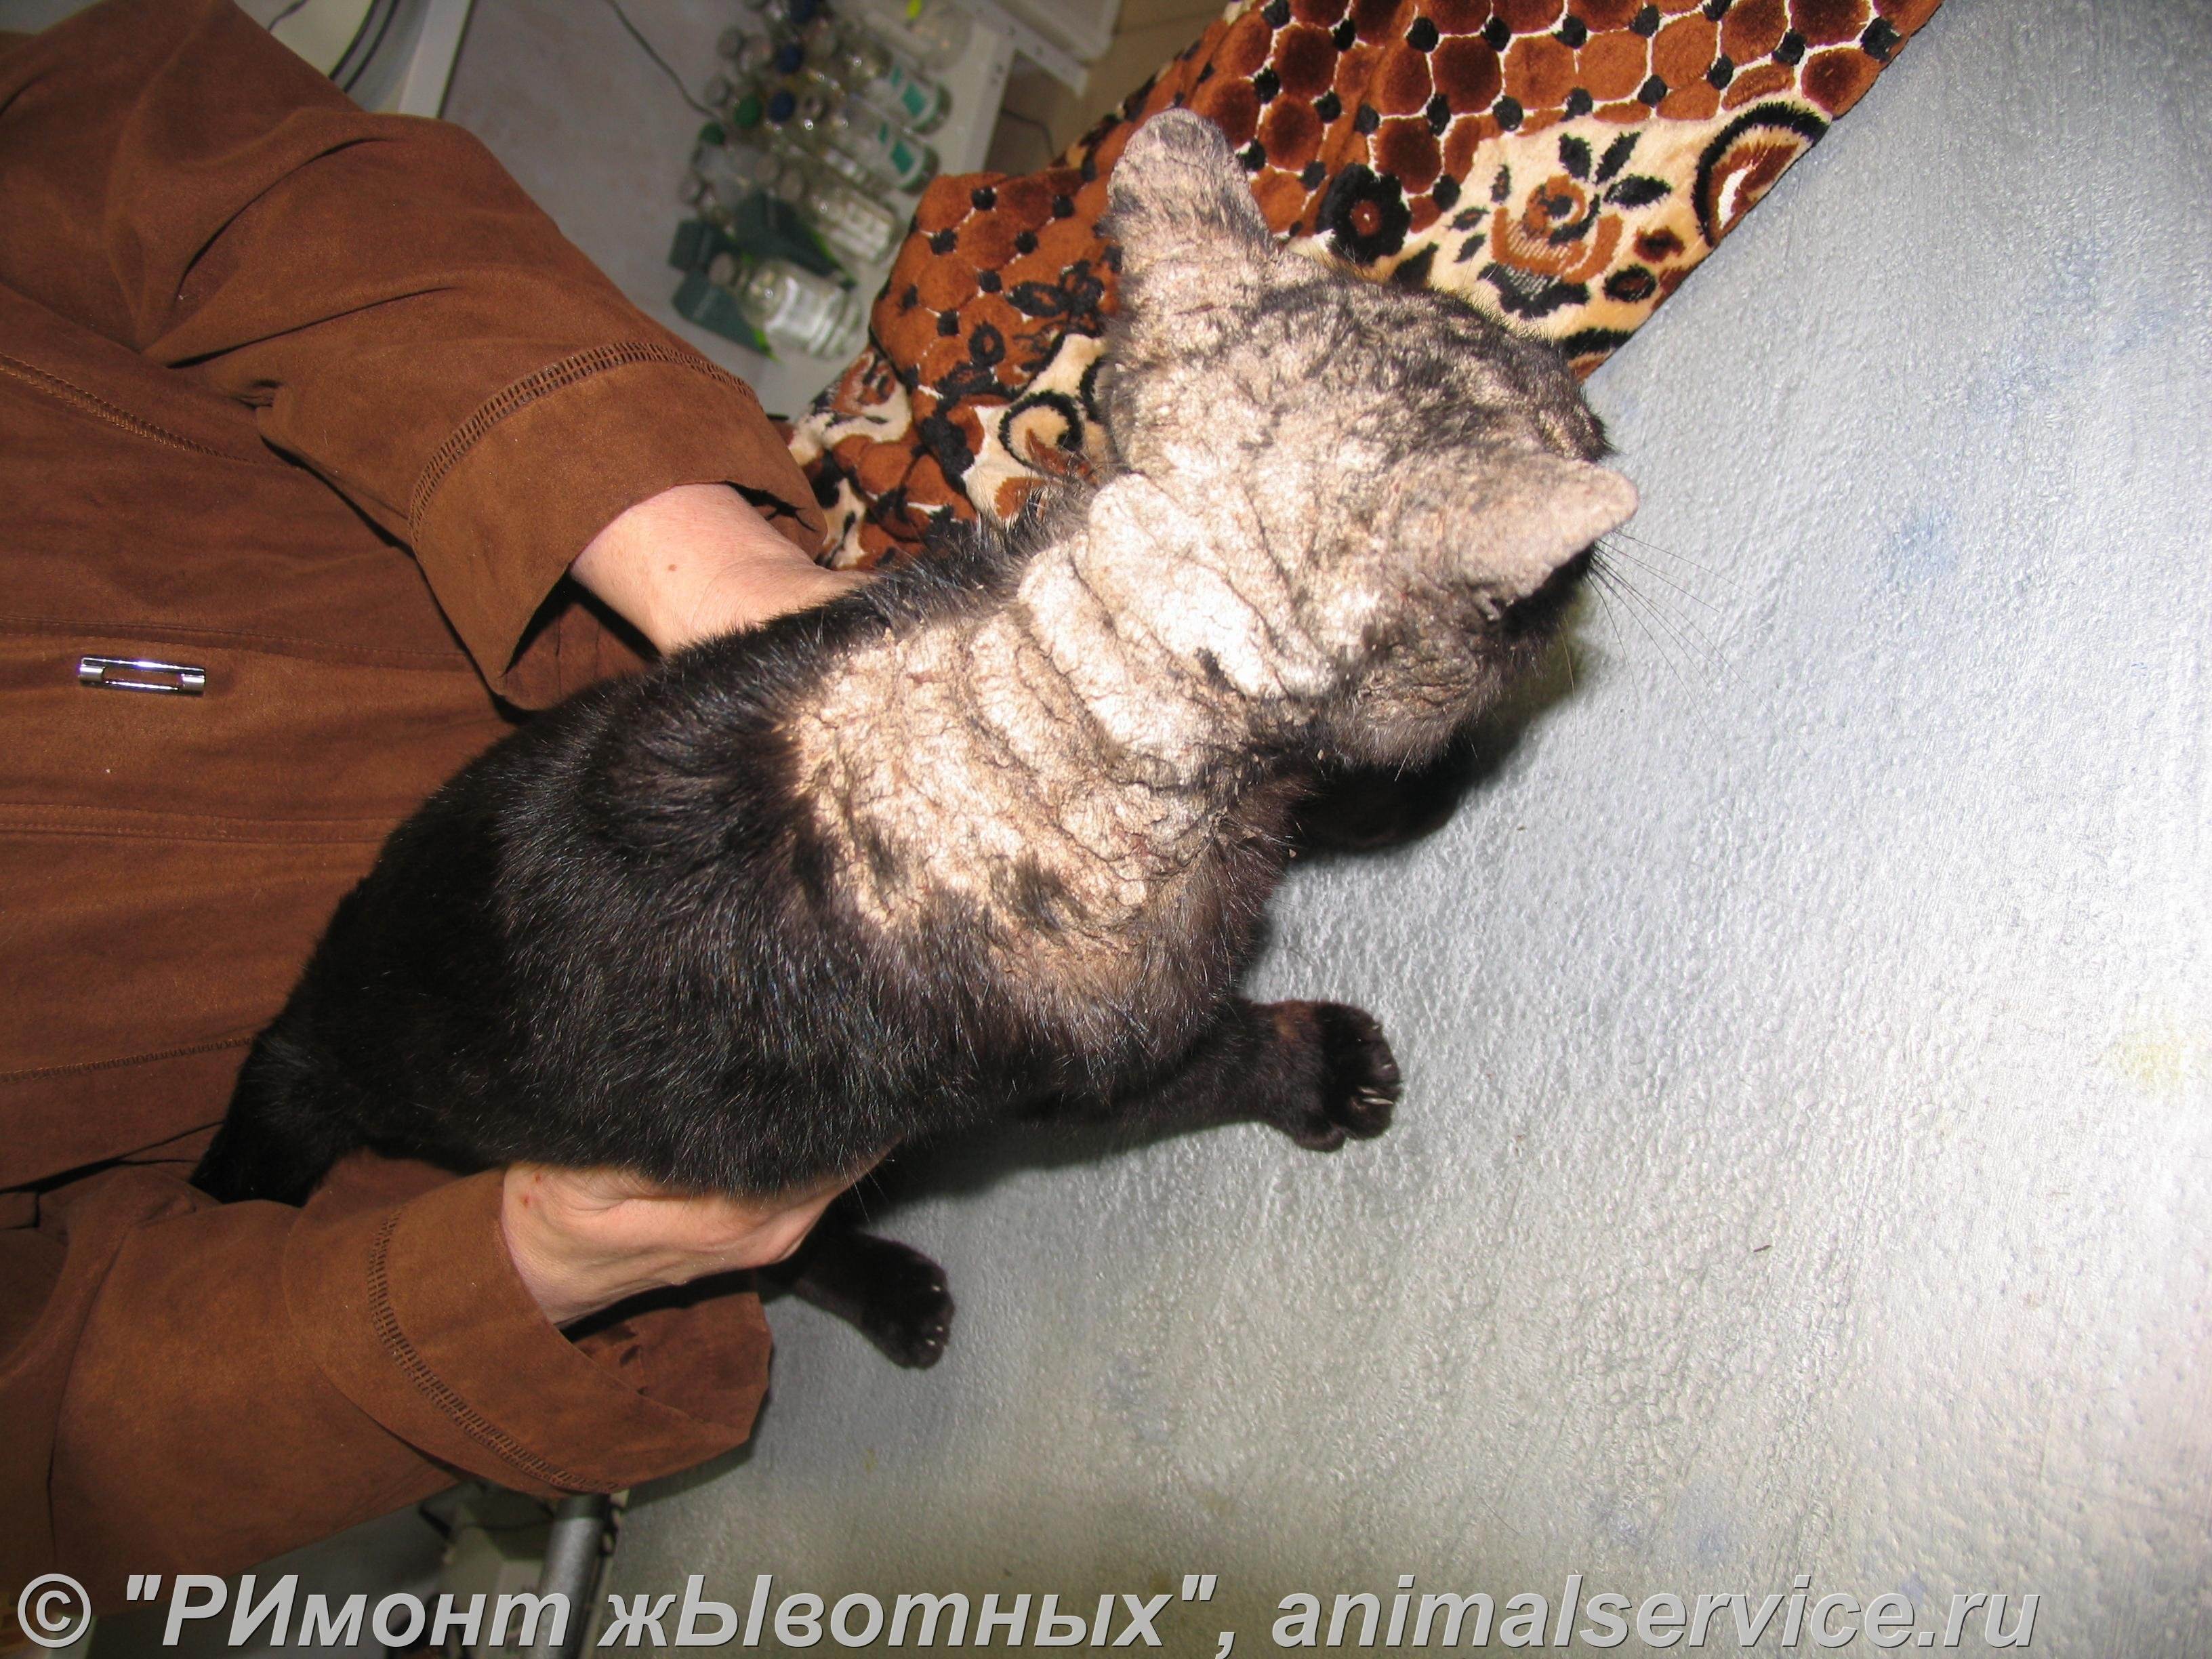 Саркоптоз у кошек —фото симптомов, домашнее лечение